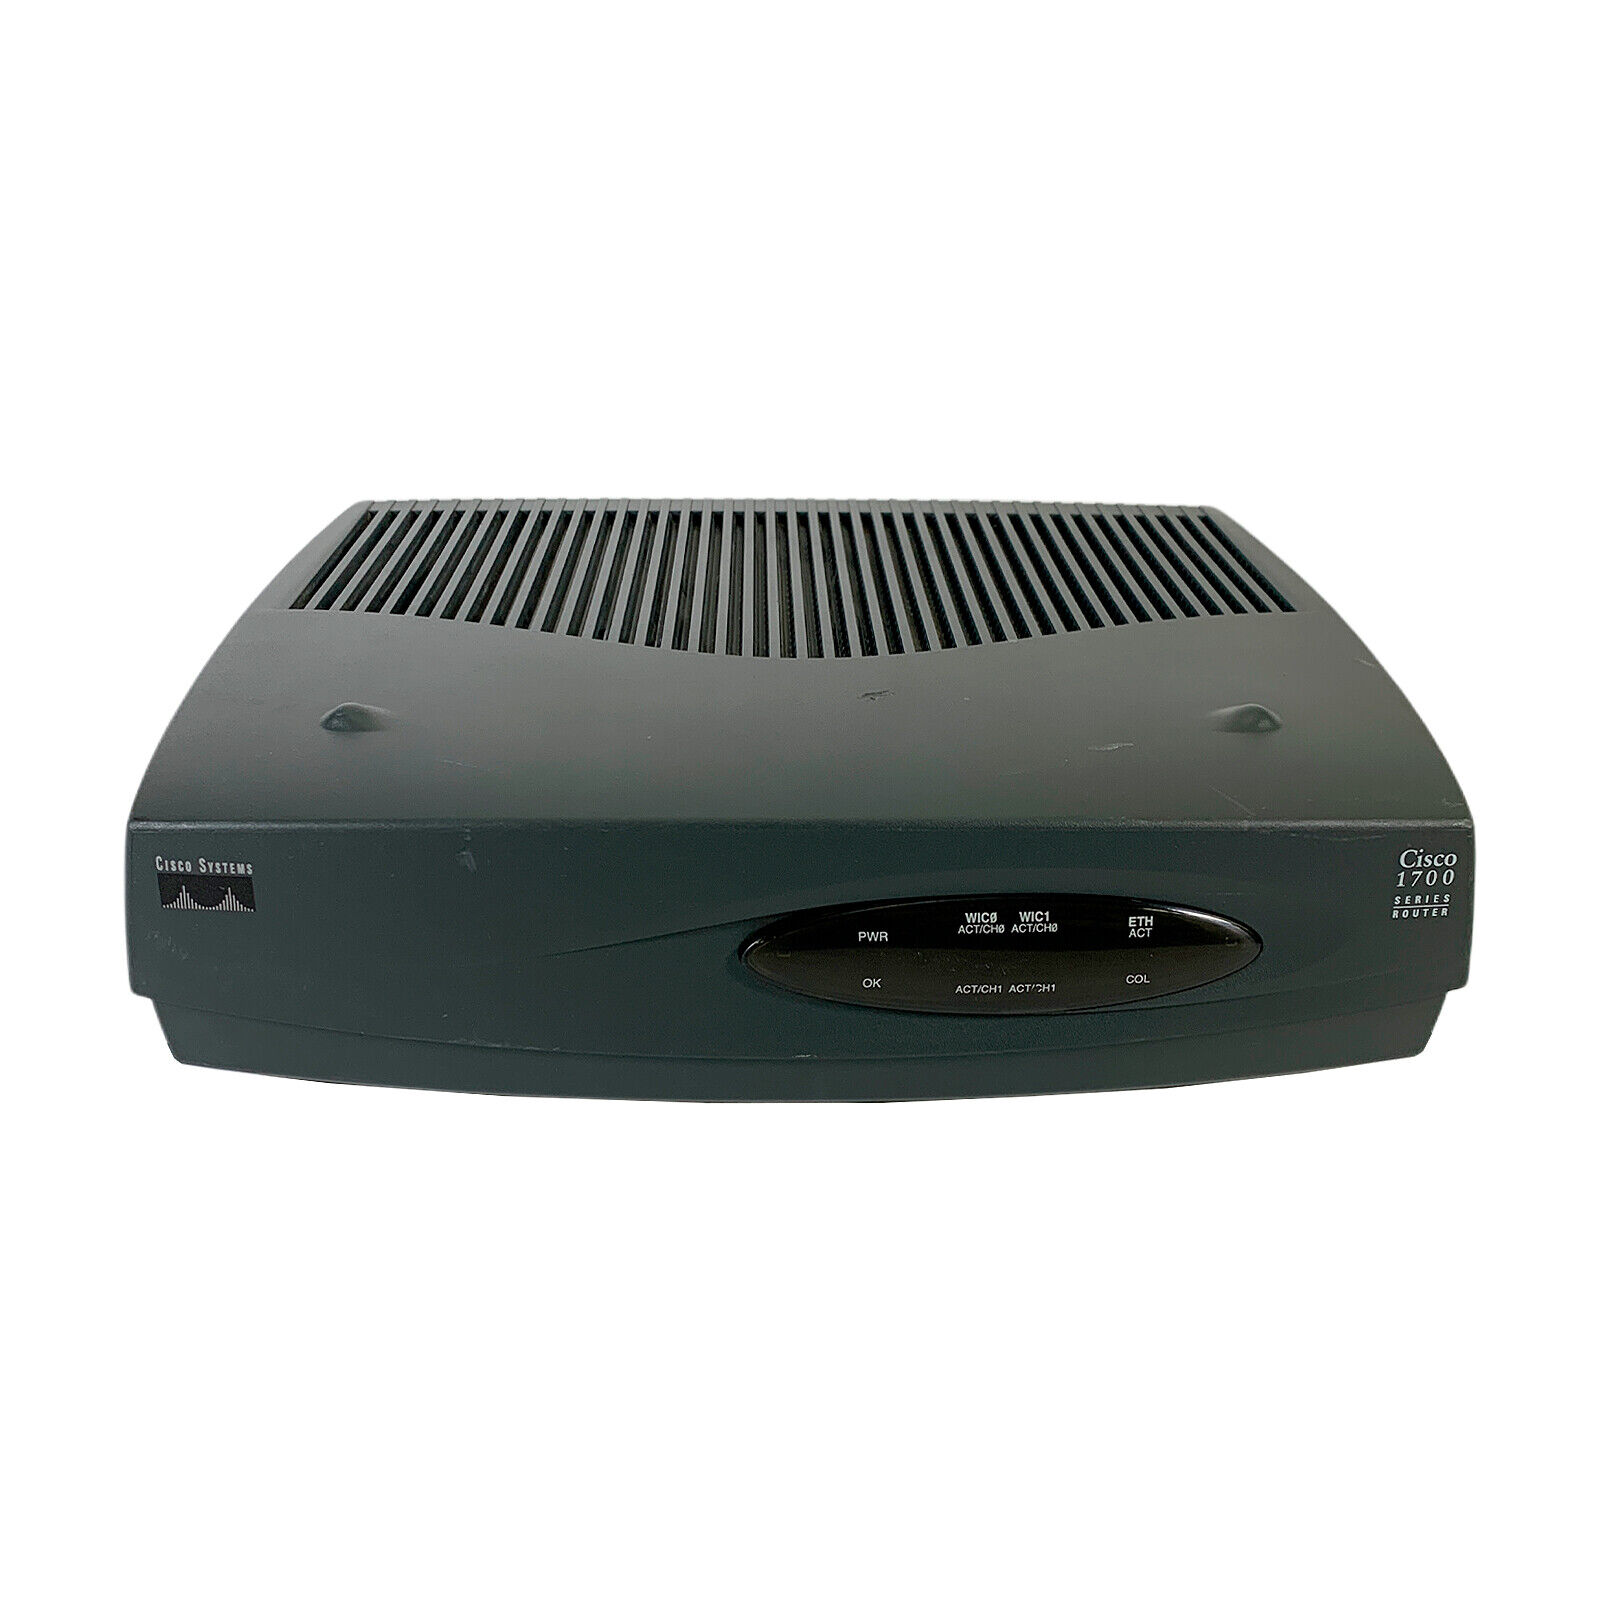  Cisco 1720 1700 Series 10/100BaseT Modular Access Router 